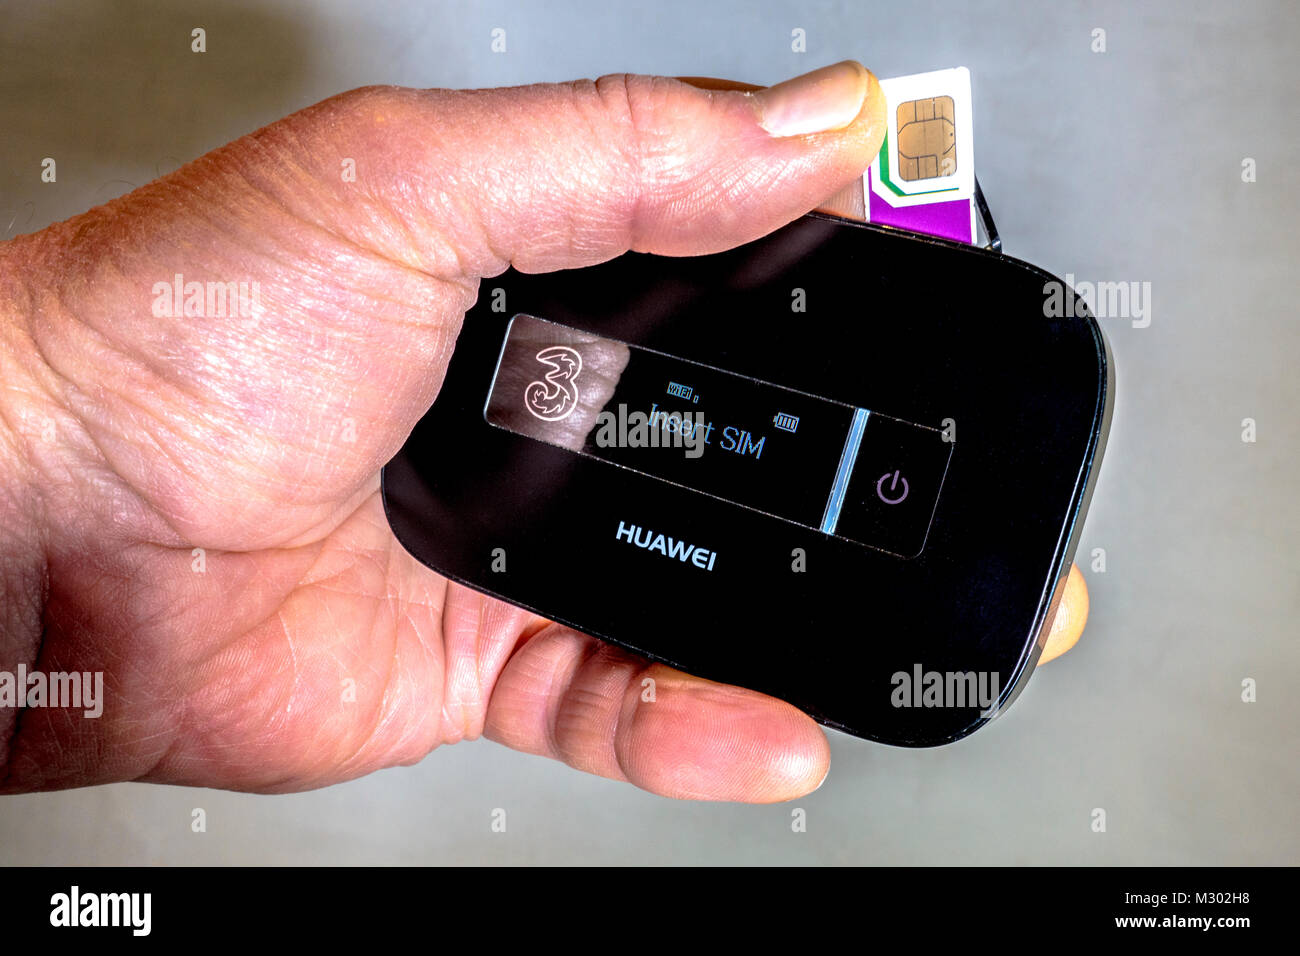 Des Menschen Hand drei Daten Trio (drei Größen) SIM-Karte, die in einen  Huawei Mobile wlan-Router eingesetzt wird, mobiles Breitbandgerät. England,  UK Stockfotografie - Alamy